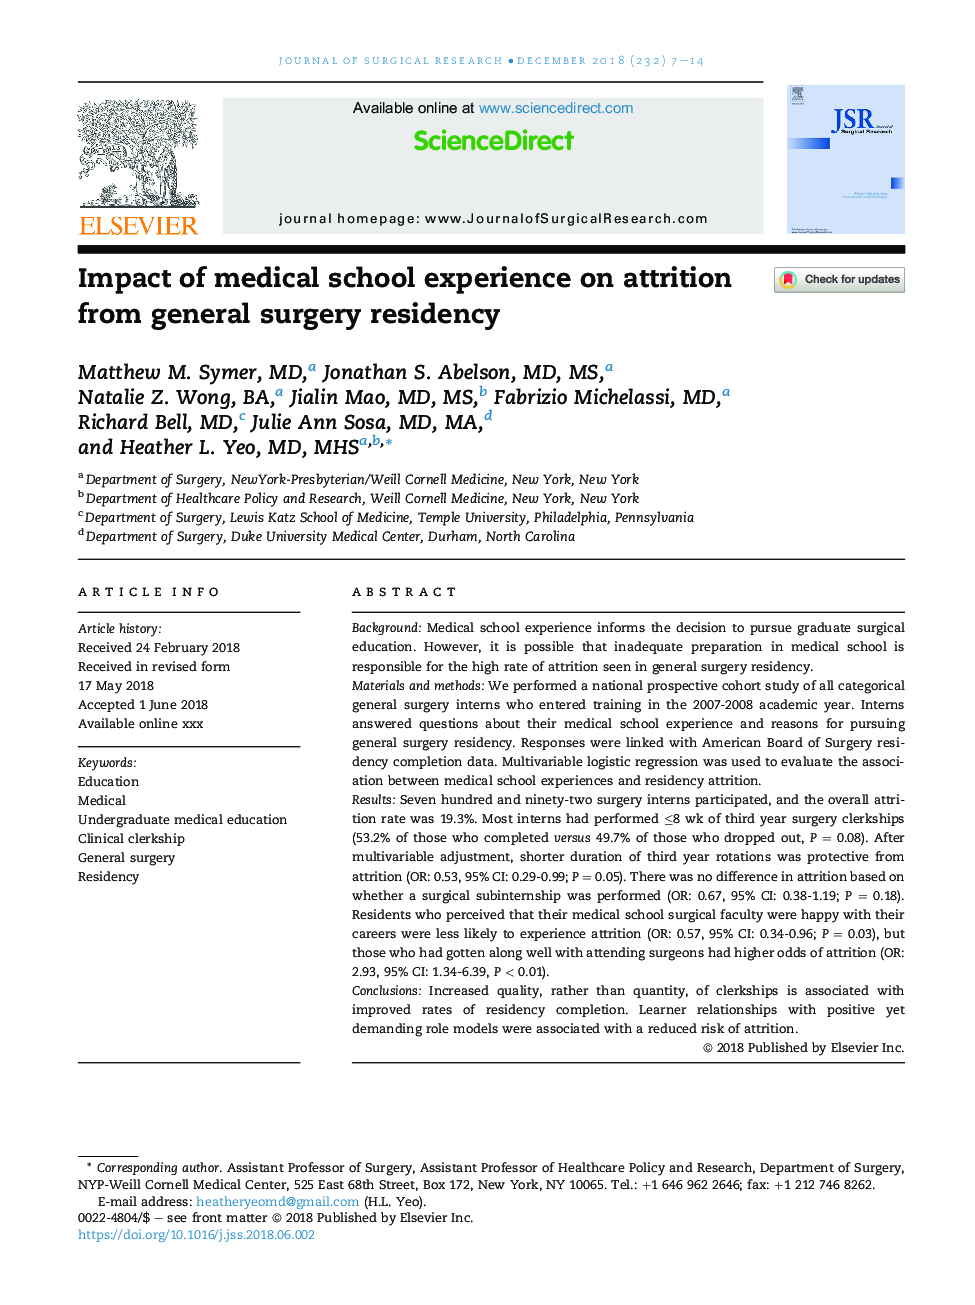 تأثیر تجربه مدرسه پزشکی بر سست شدن جراحی عمومی جراحی 